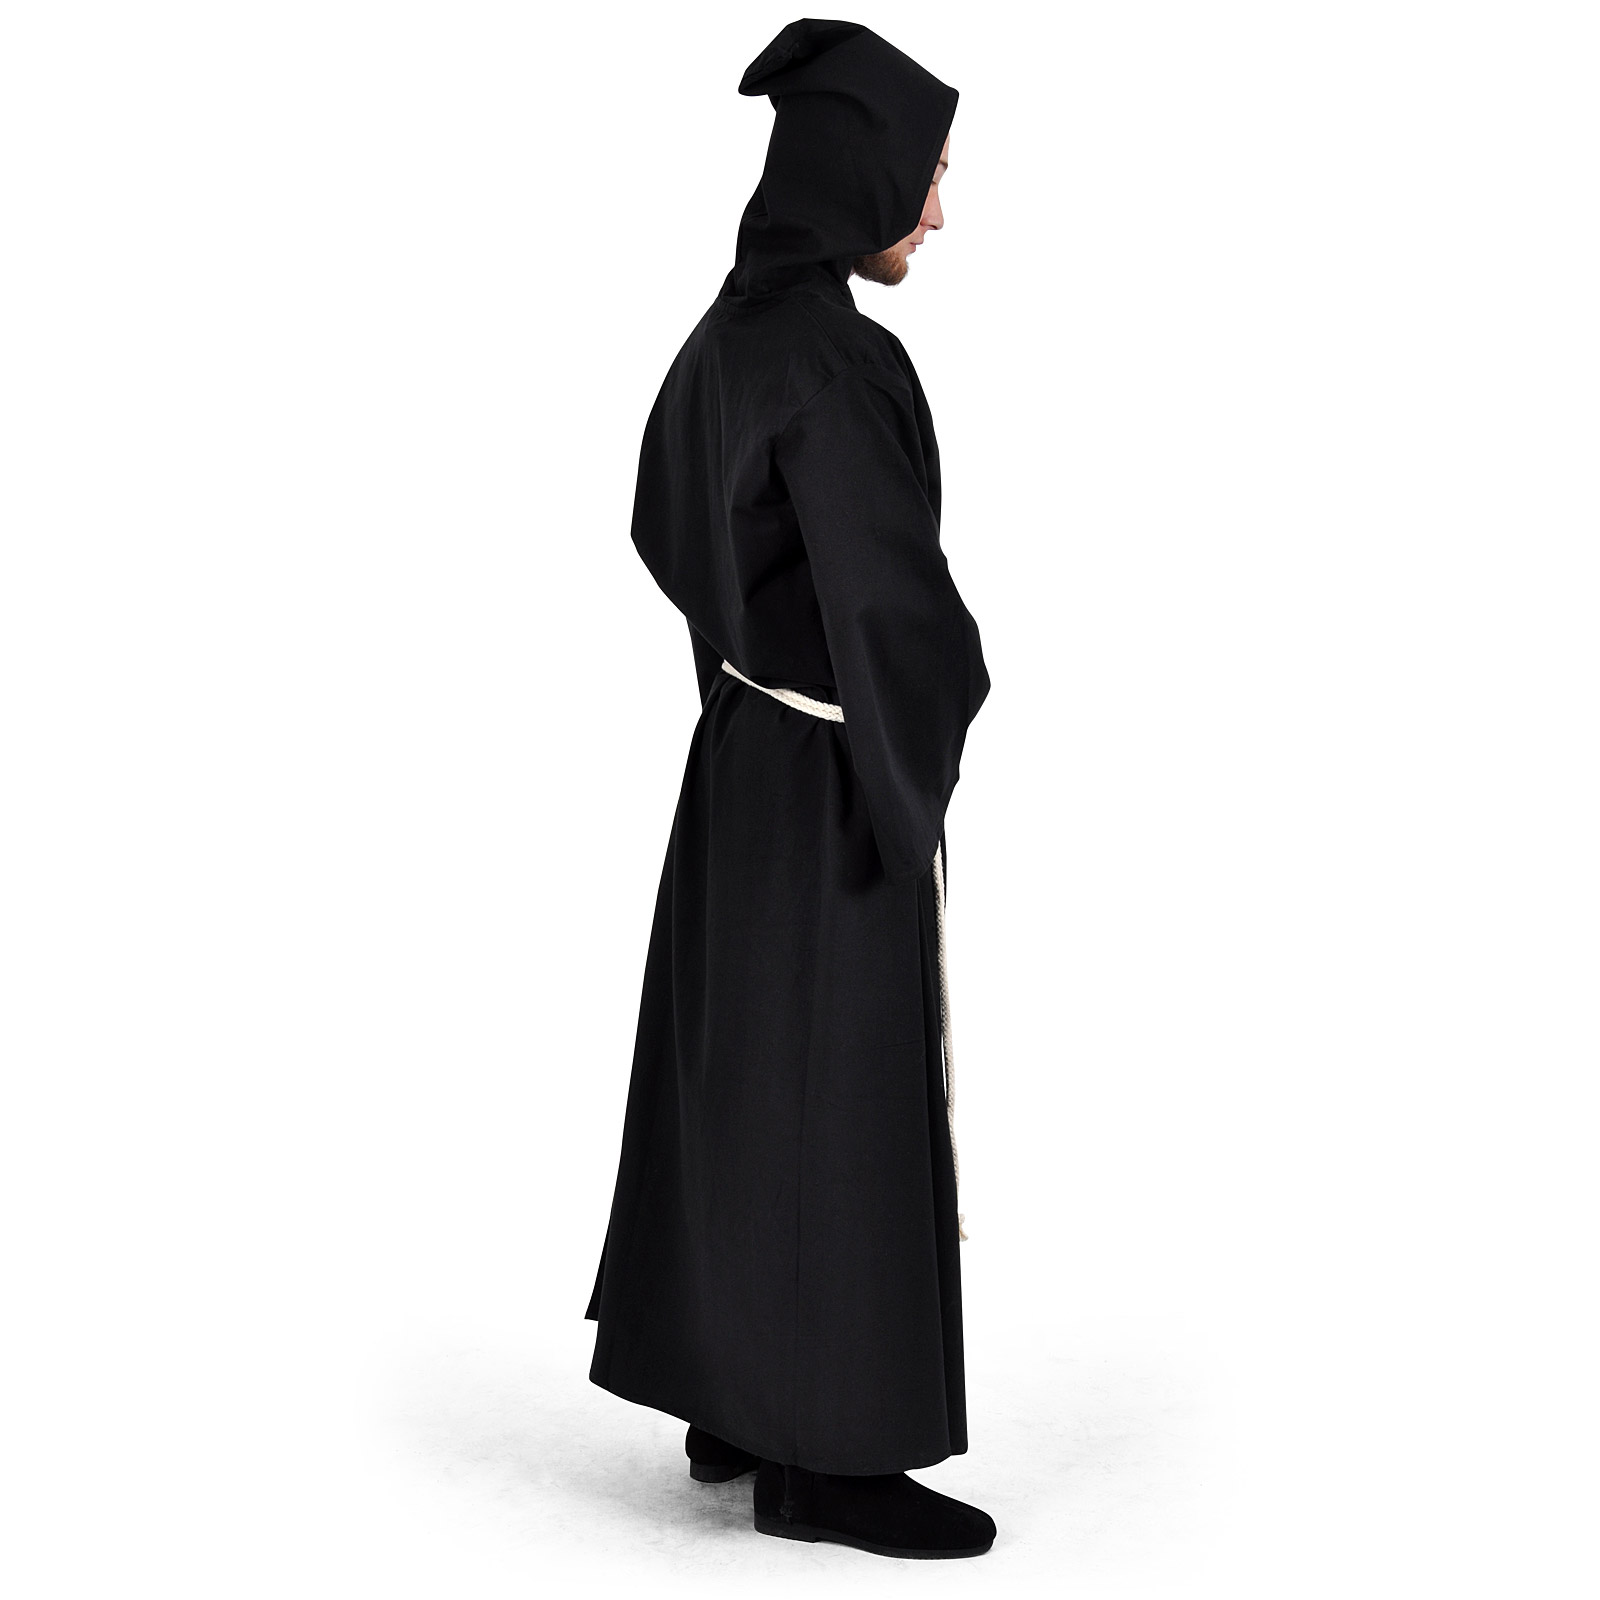 Robe de moine avec cordon noir